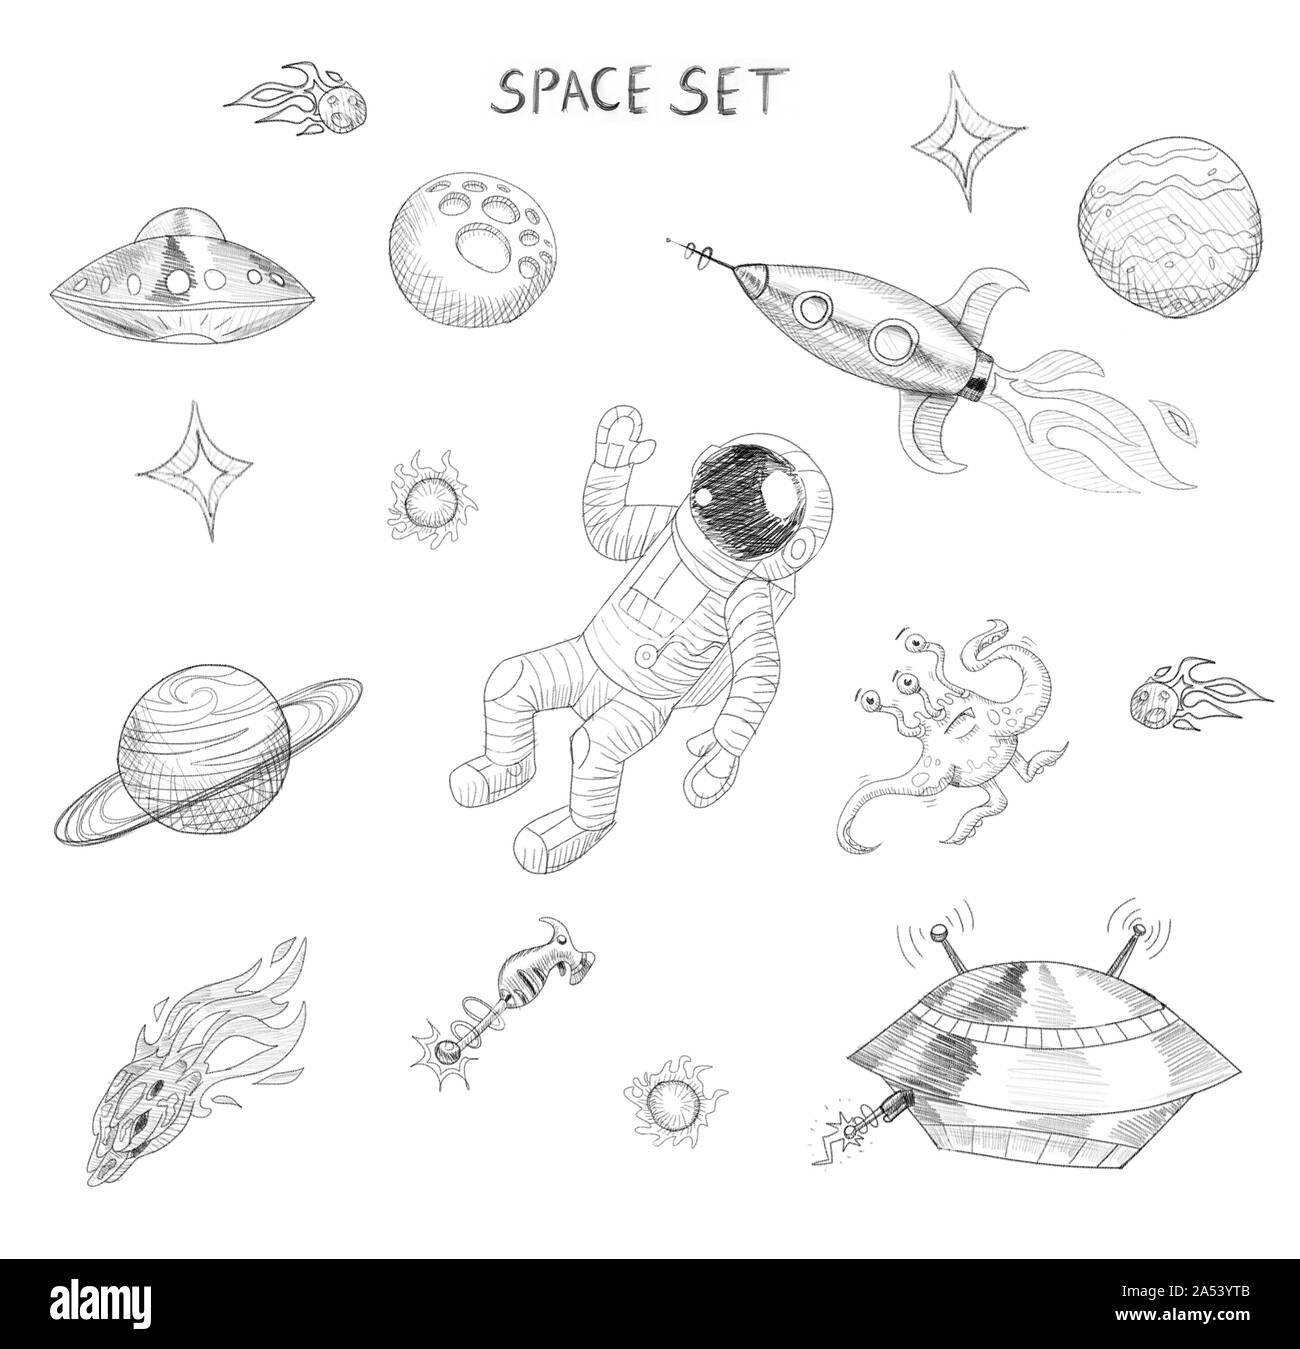 Weltraum zeichnen